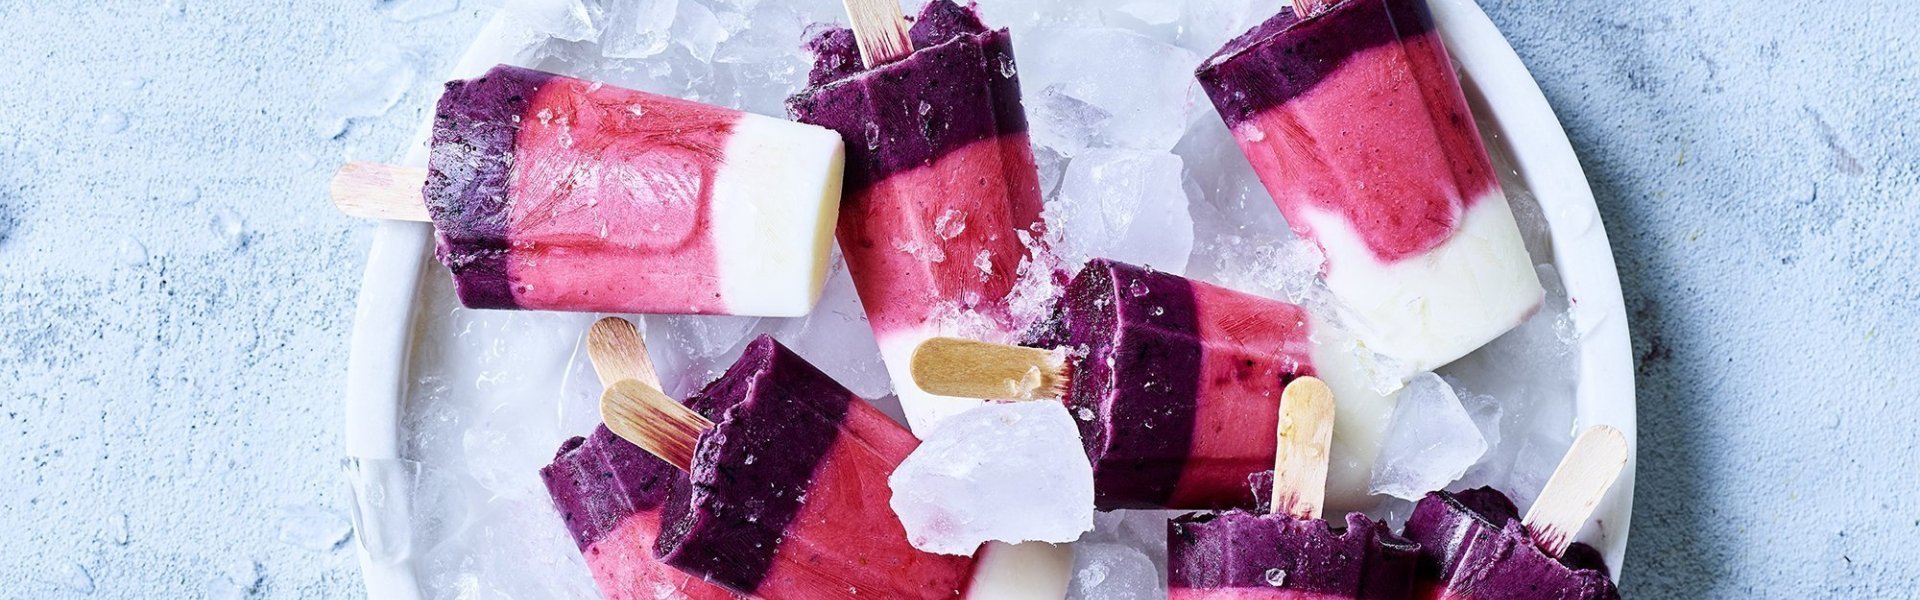 Zelfgemaakte raketijsjes met heerlijk Belgisch zomerfruit. Denk maar aan aardbeien en blauwe bessen. De homemade ijsjes liggen op een schaal gevuld met ijsblokjes. 